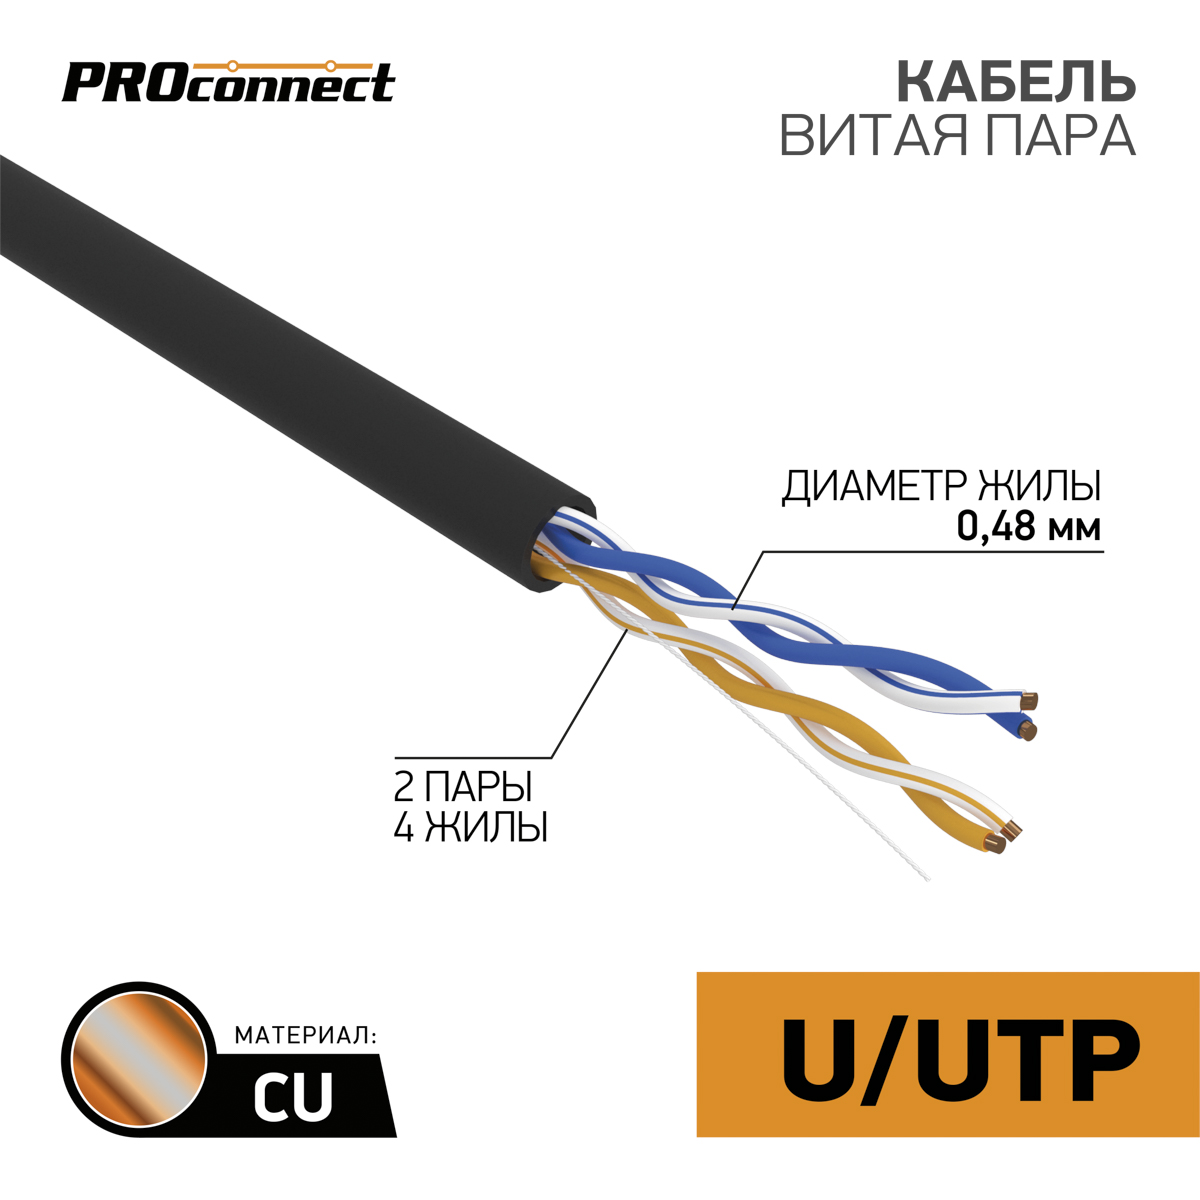 Кабель UTP 4 х 2 x 0,48 мм, cat 5e, наружный (OUTDOOR)  PROCONNECT  в Самаре